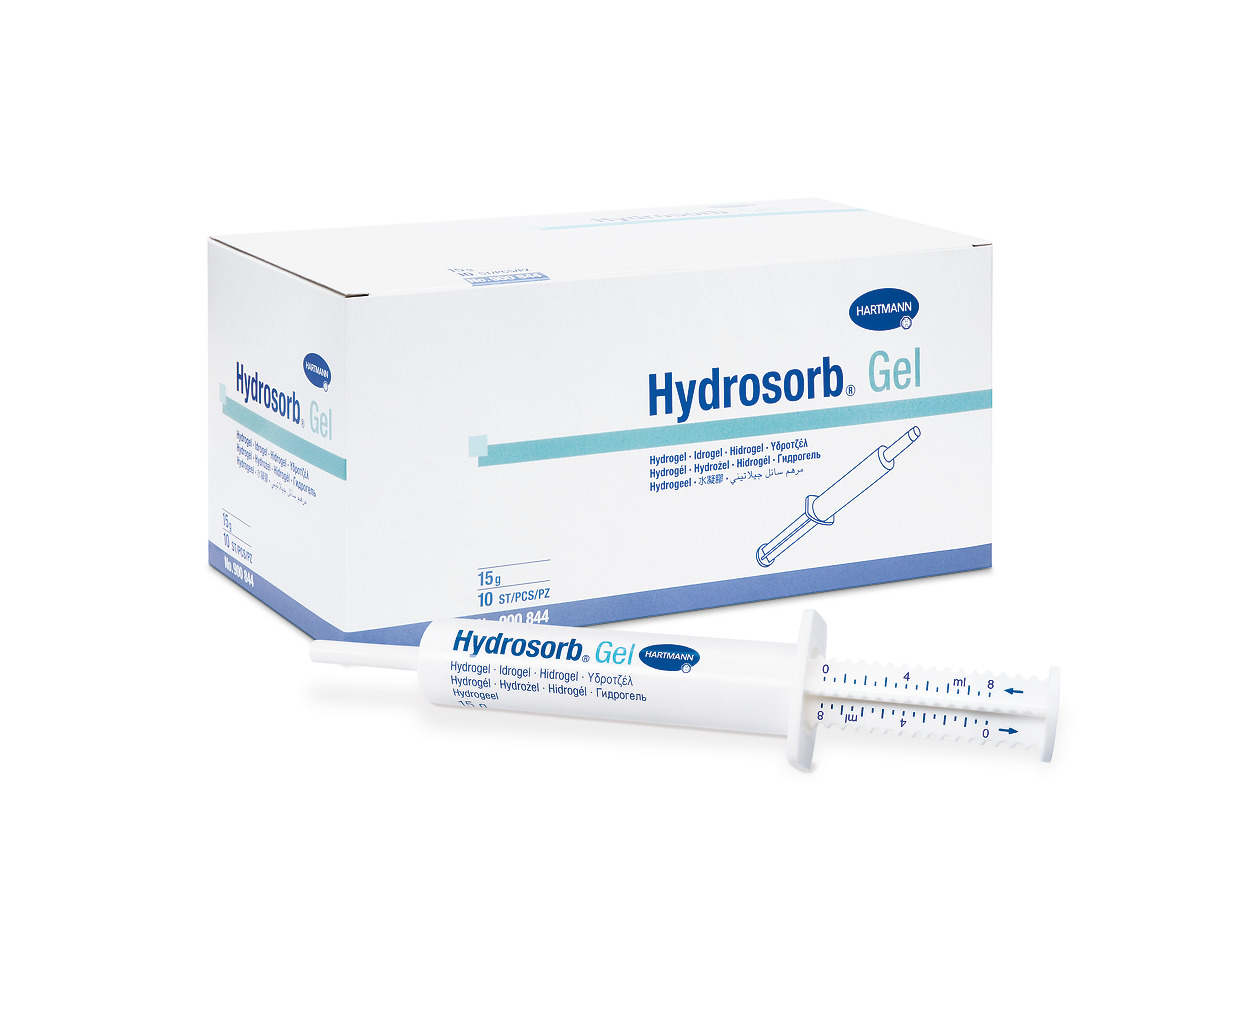 Hydrosorb Gel 15g, 10 Stck.